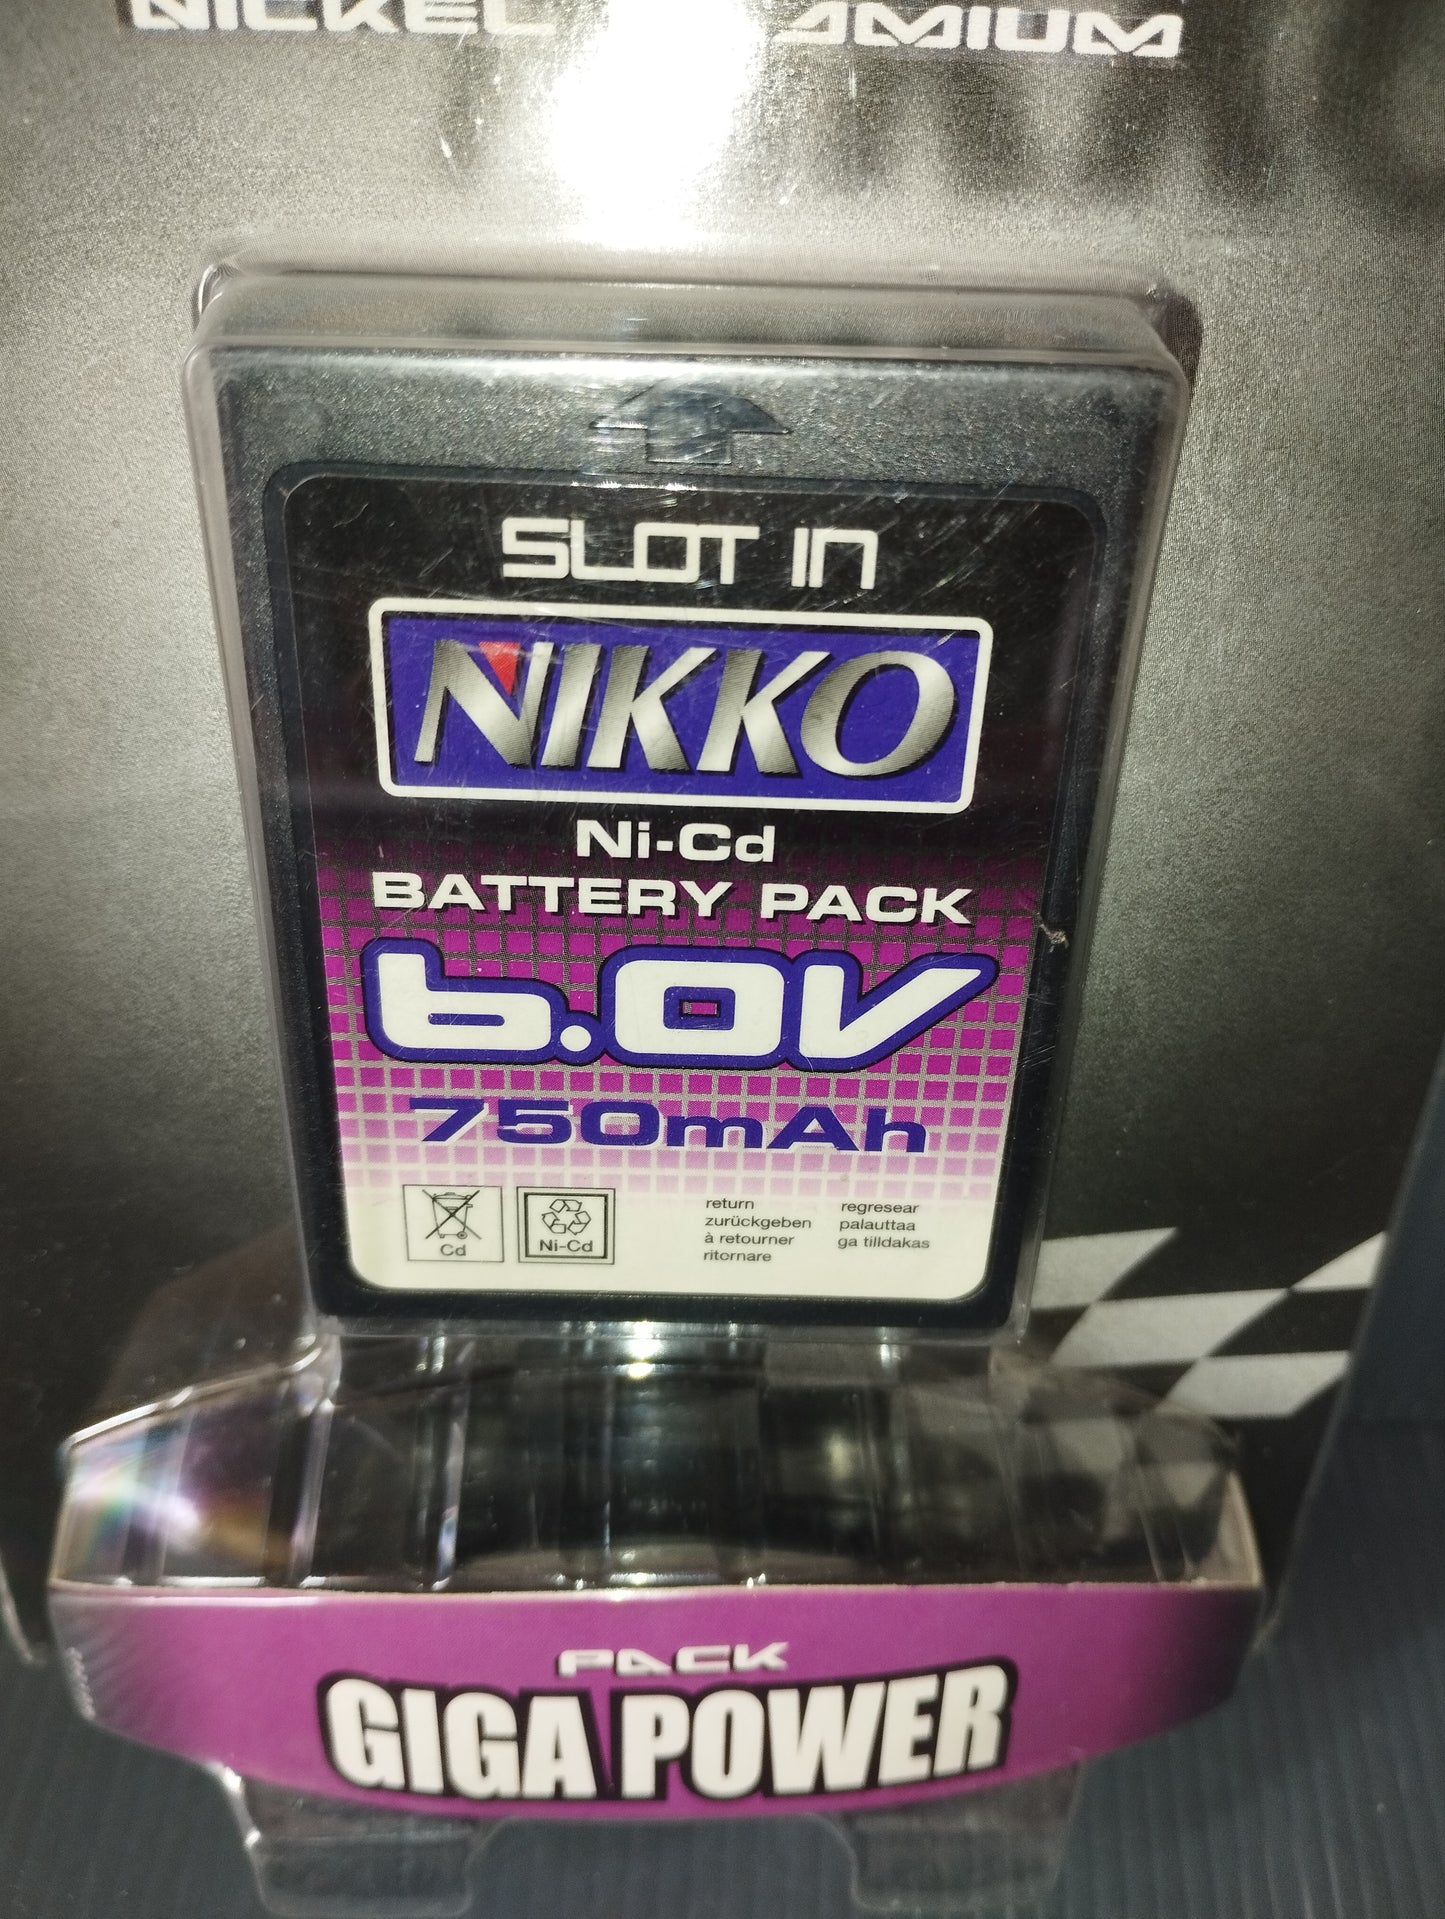 Nikko Battery 6.0V 750mAh

 Giga Power Pack